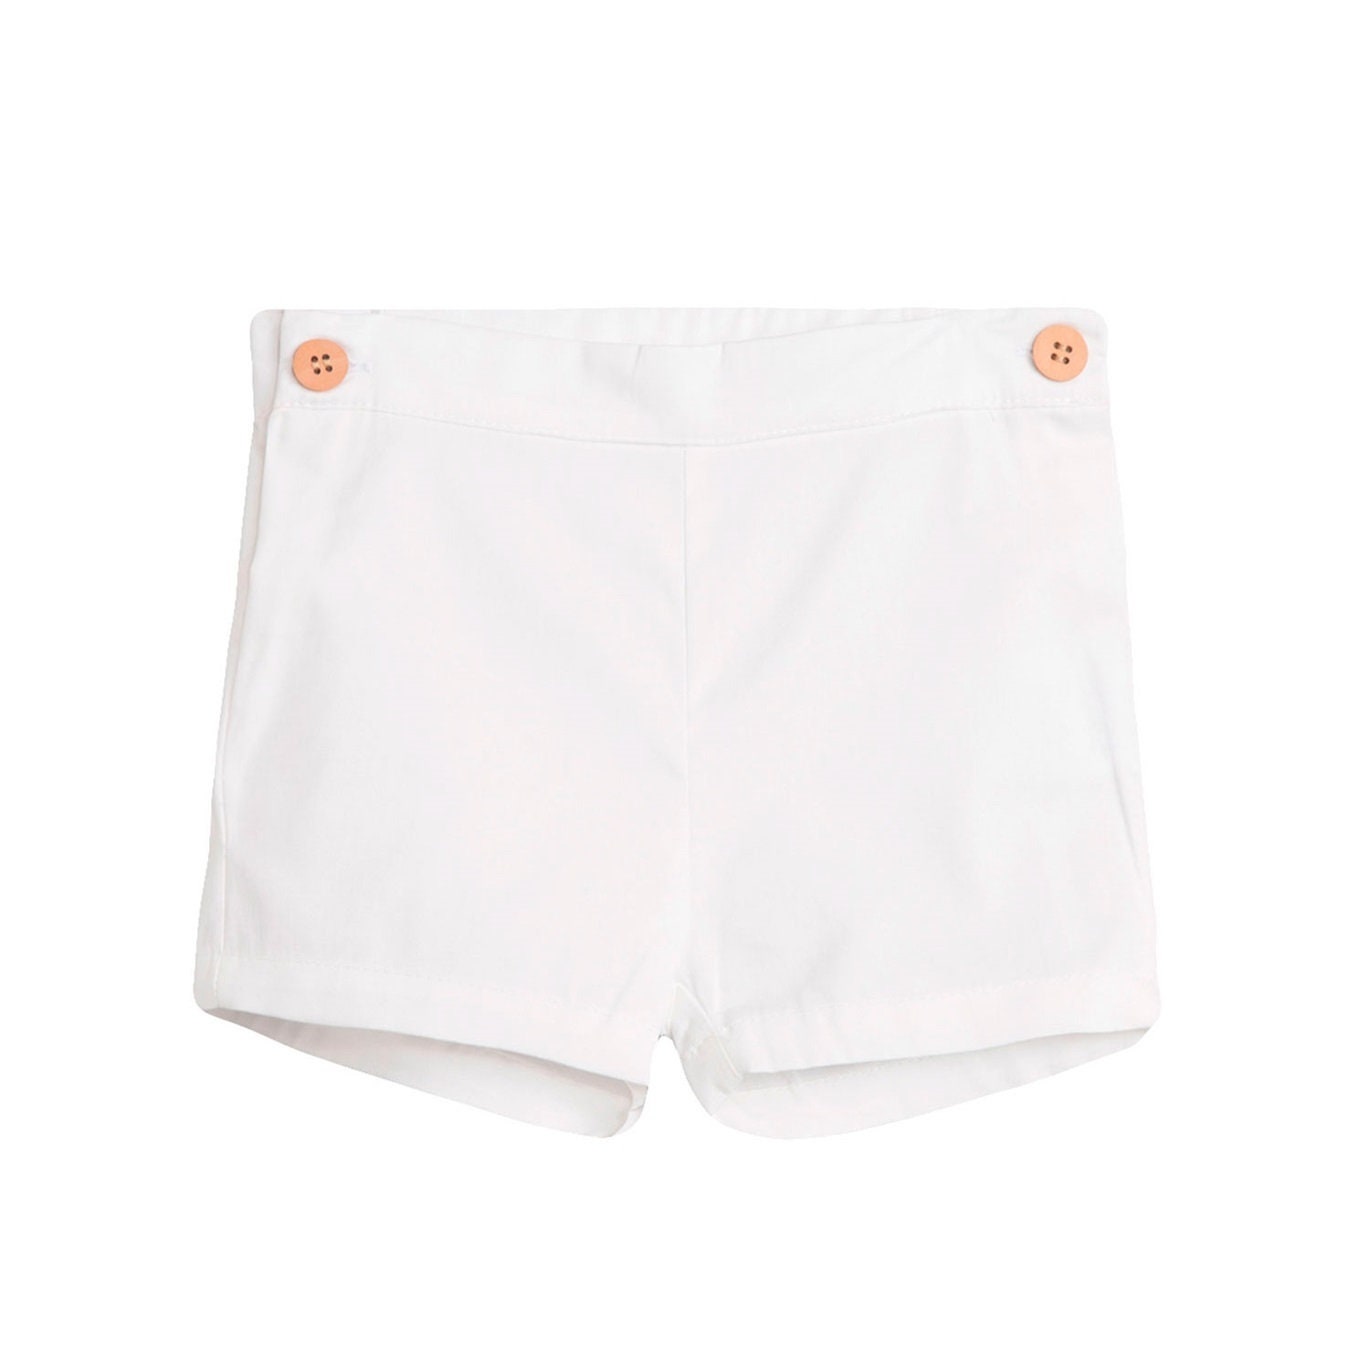 infant boy white shorts